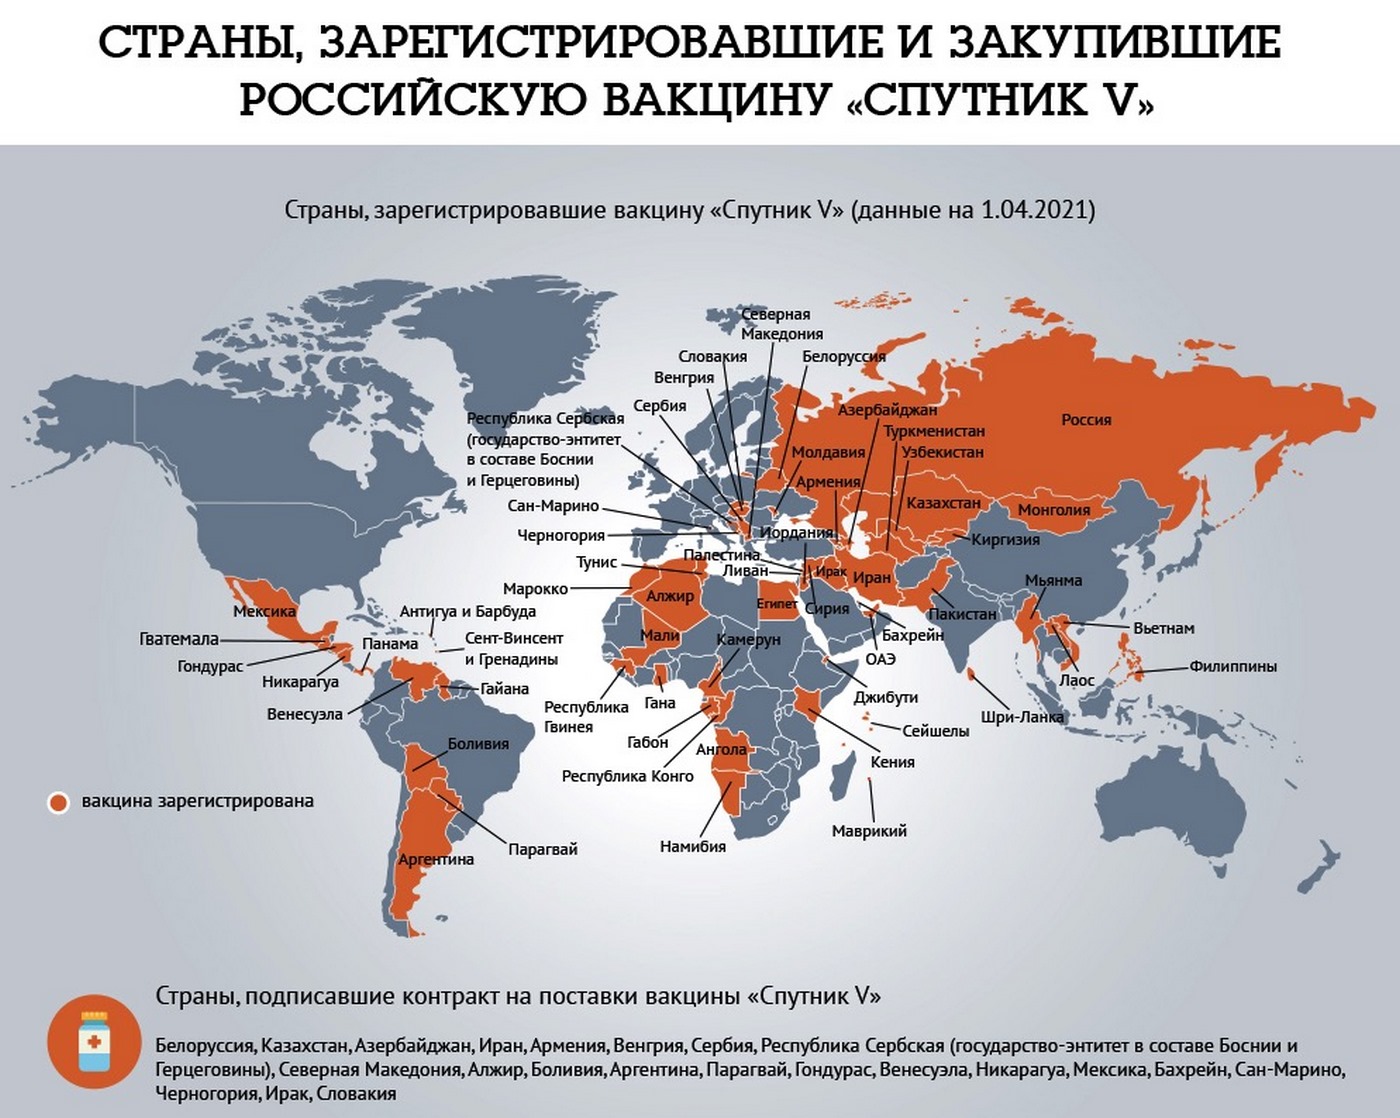 Какая страна первая признала. Спутник вакцина страны. Страны вакцинированные спутником. Страны одобрившие Спутник v список. Какие страны признали Спутник v.